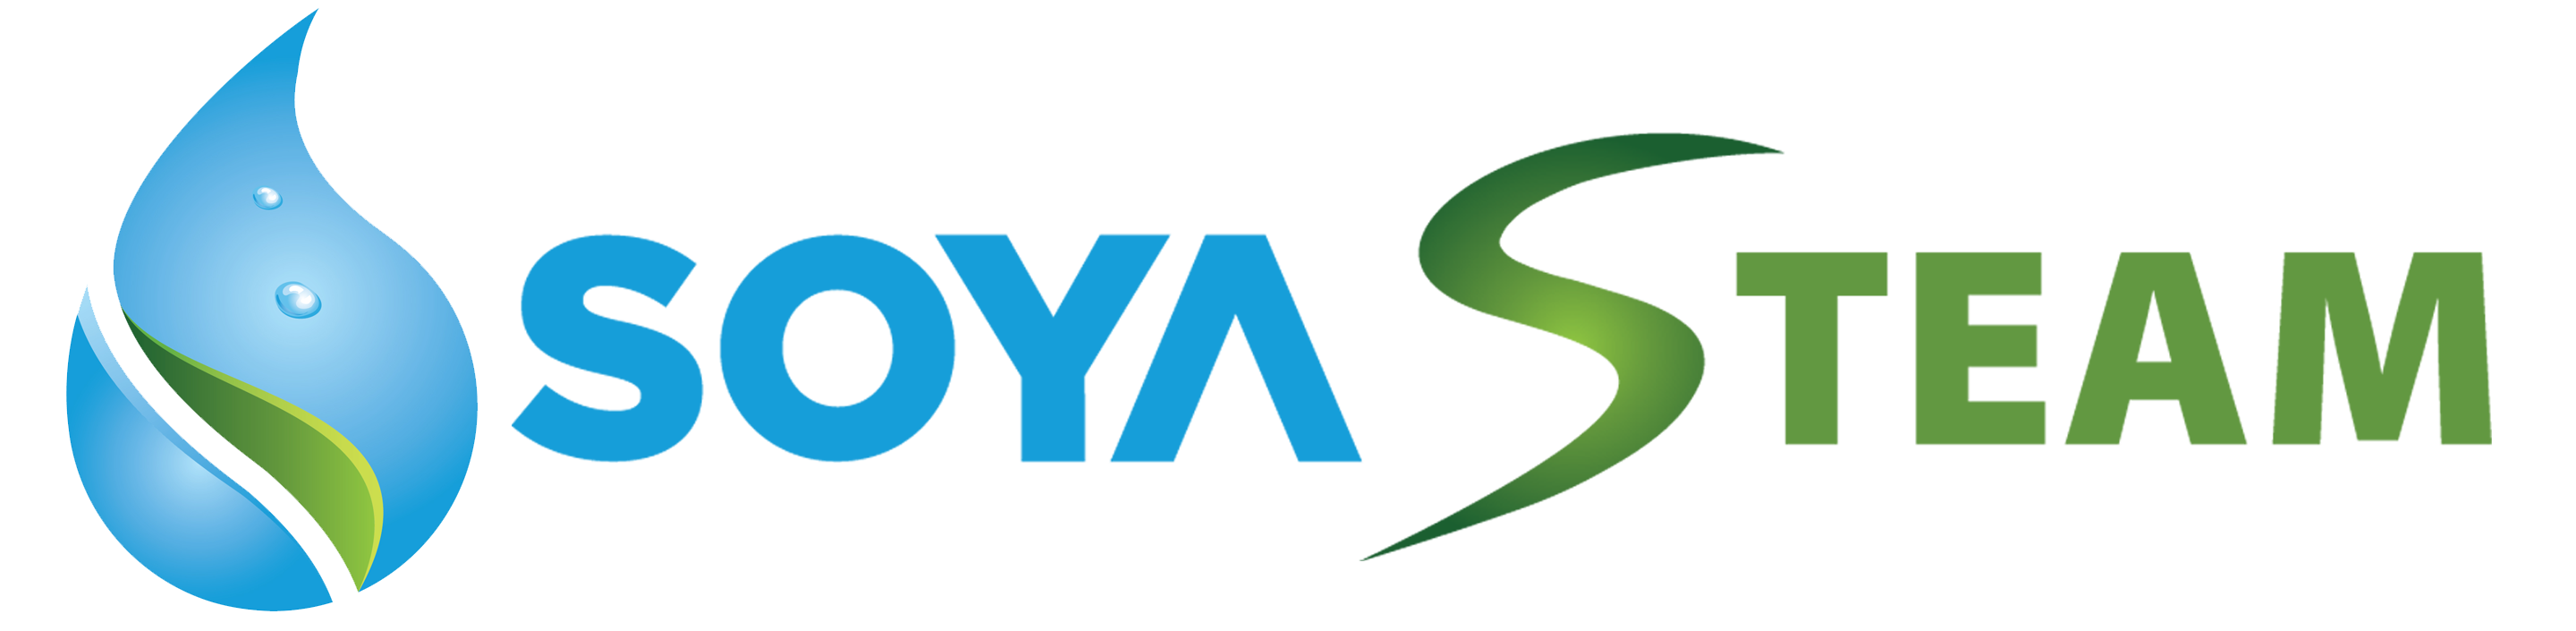 Soya - Thương hiệu Máy xông hơi hàng đầu Việt Nam